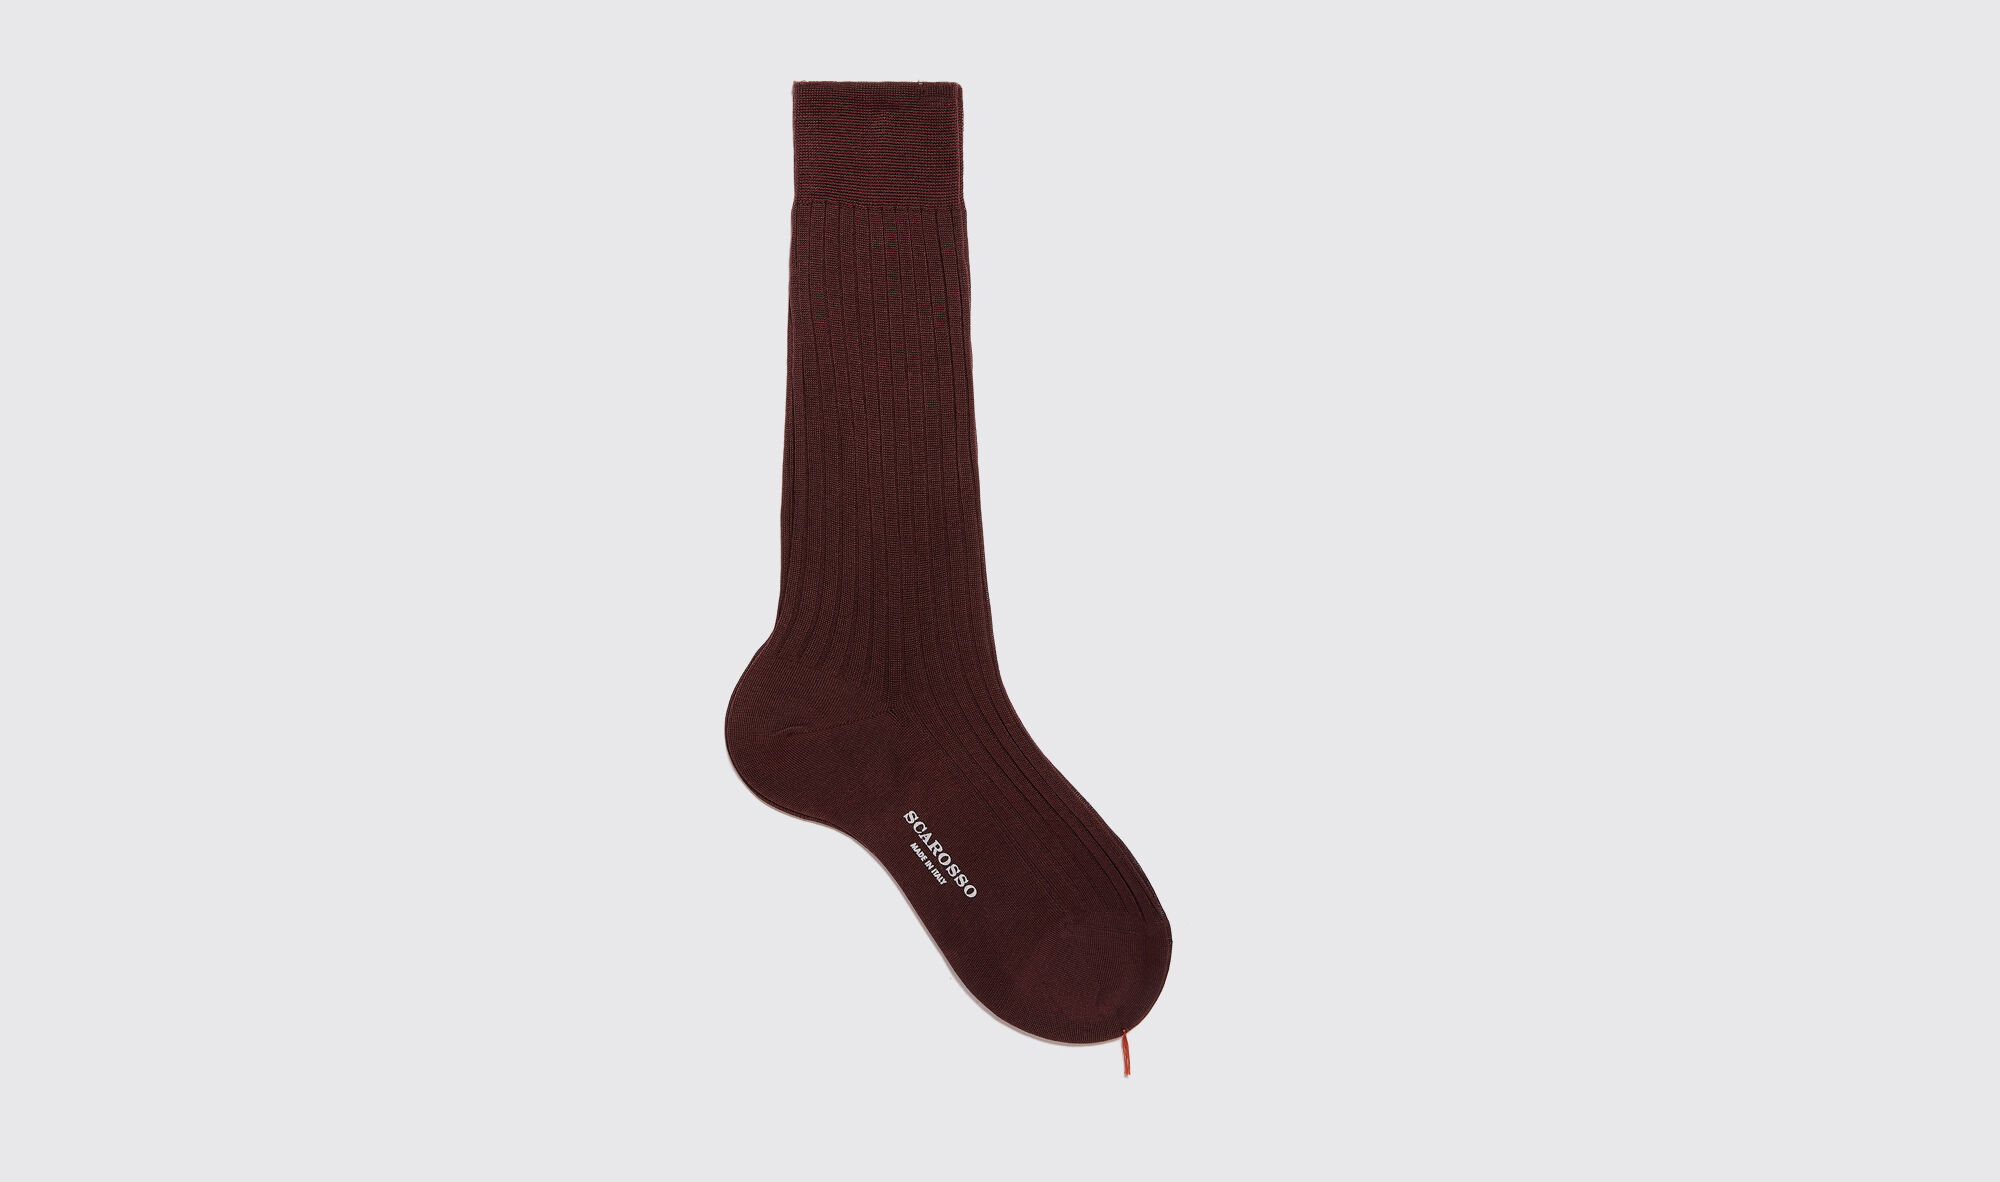 scarosso burgundy cotton calf socks - uomo calze borgogna - cotone 40-41